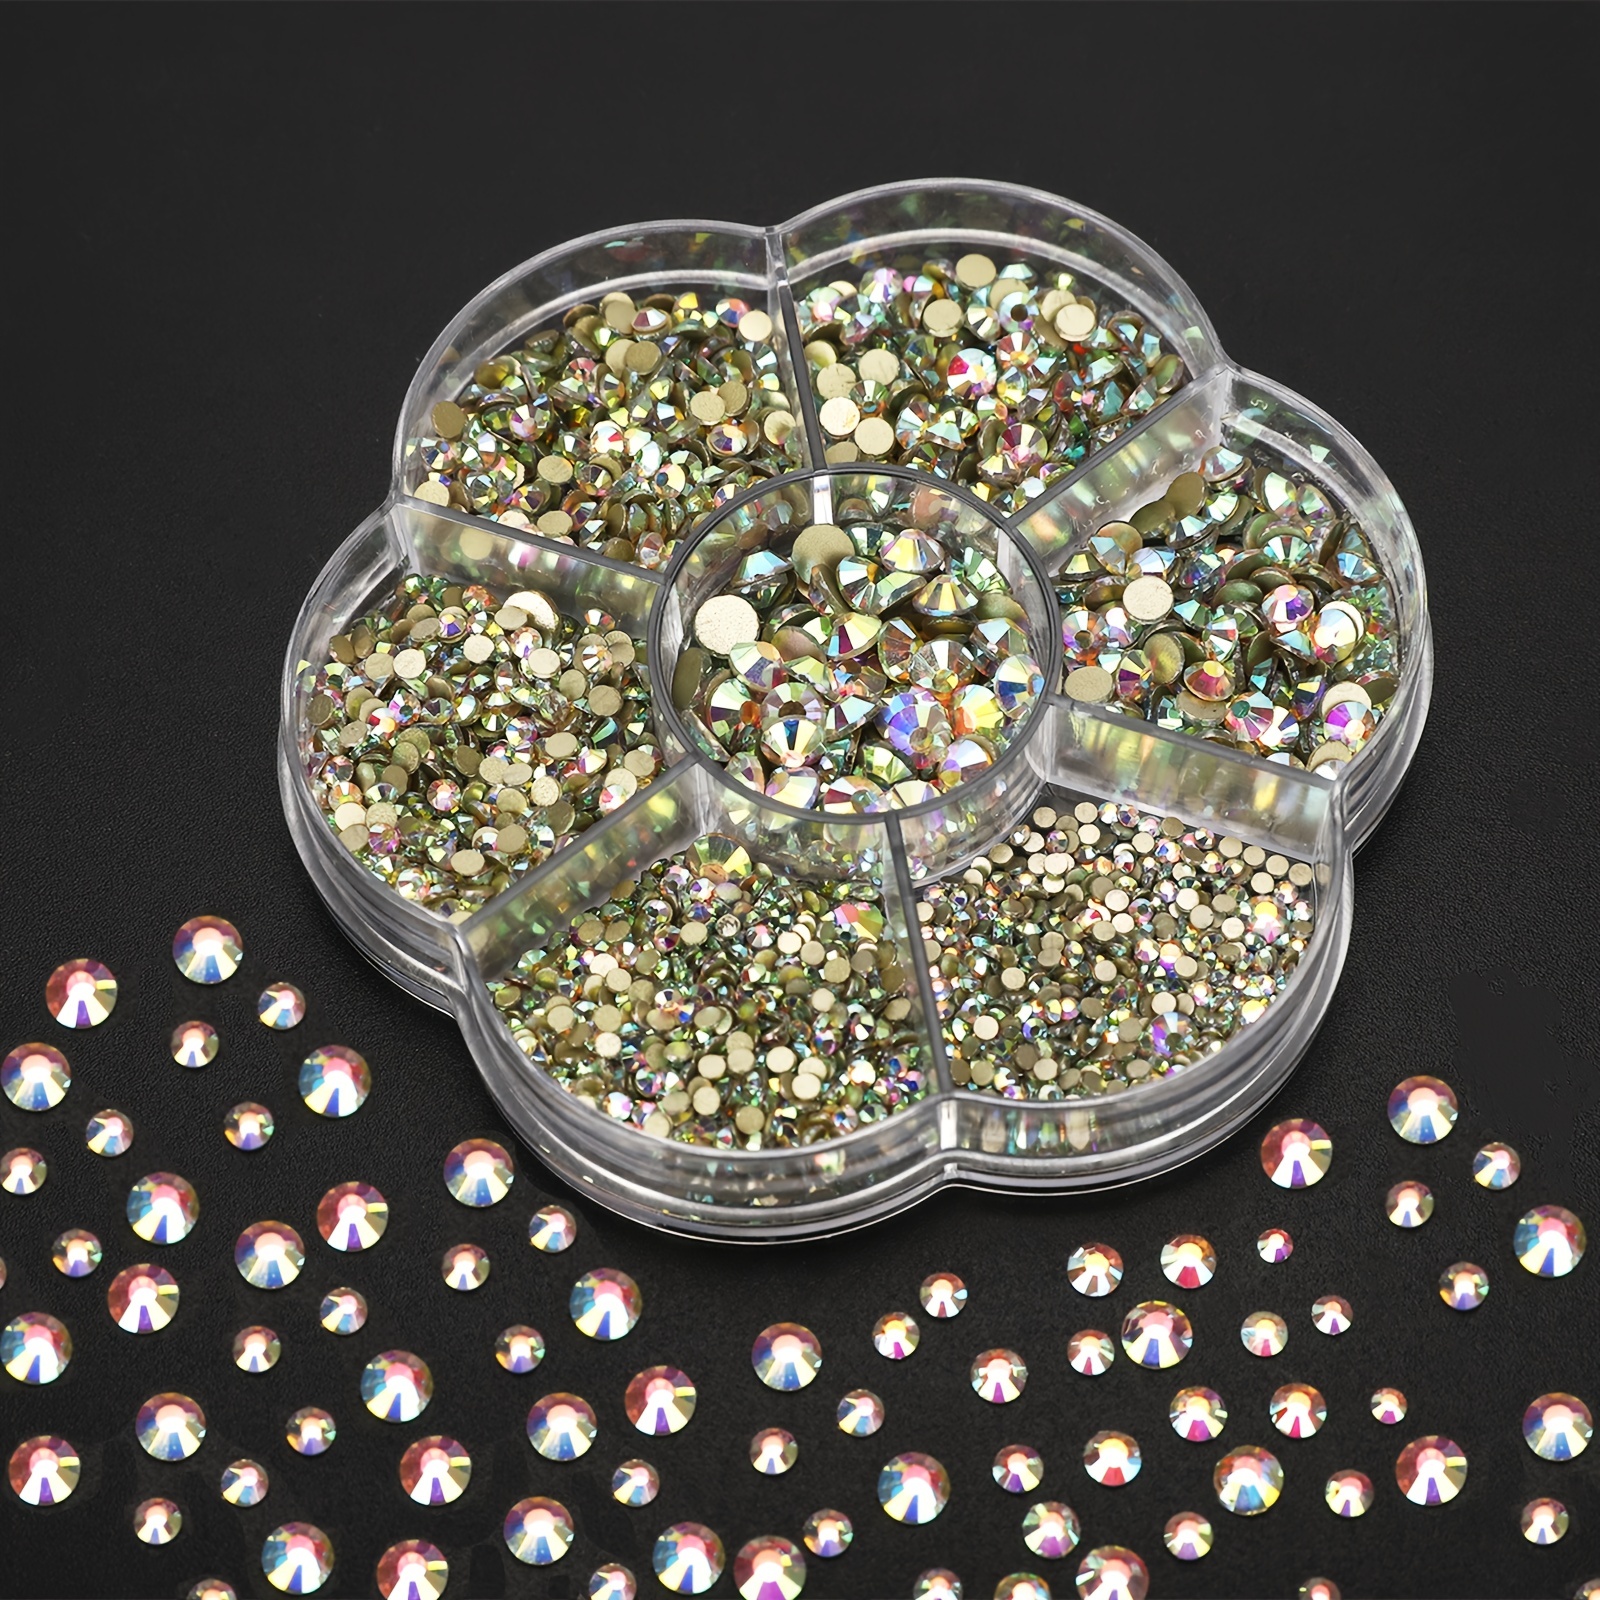 Cristales falsos de acrílico Super Z Outlet® de colores, con forma de gemas  del tesoro, diamantes y piedras preciosas redondas para decorar mesas